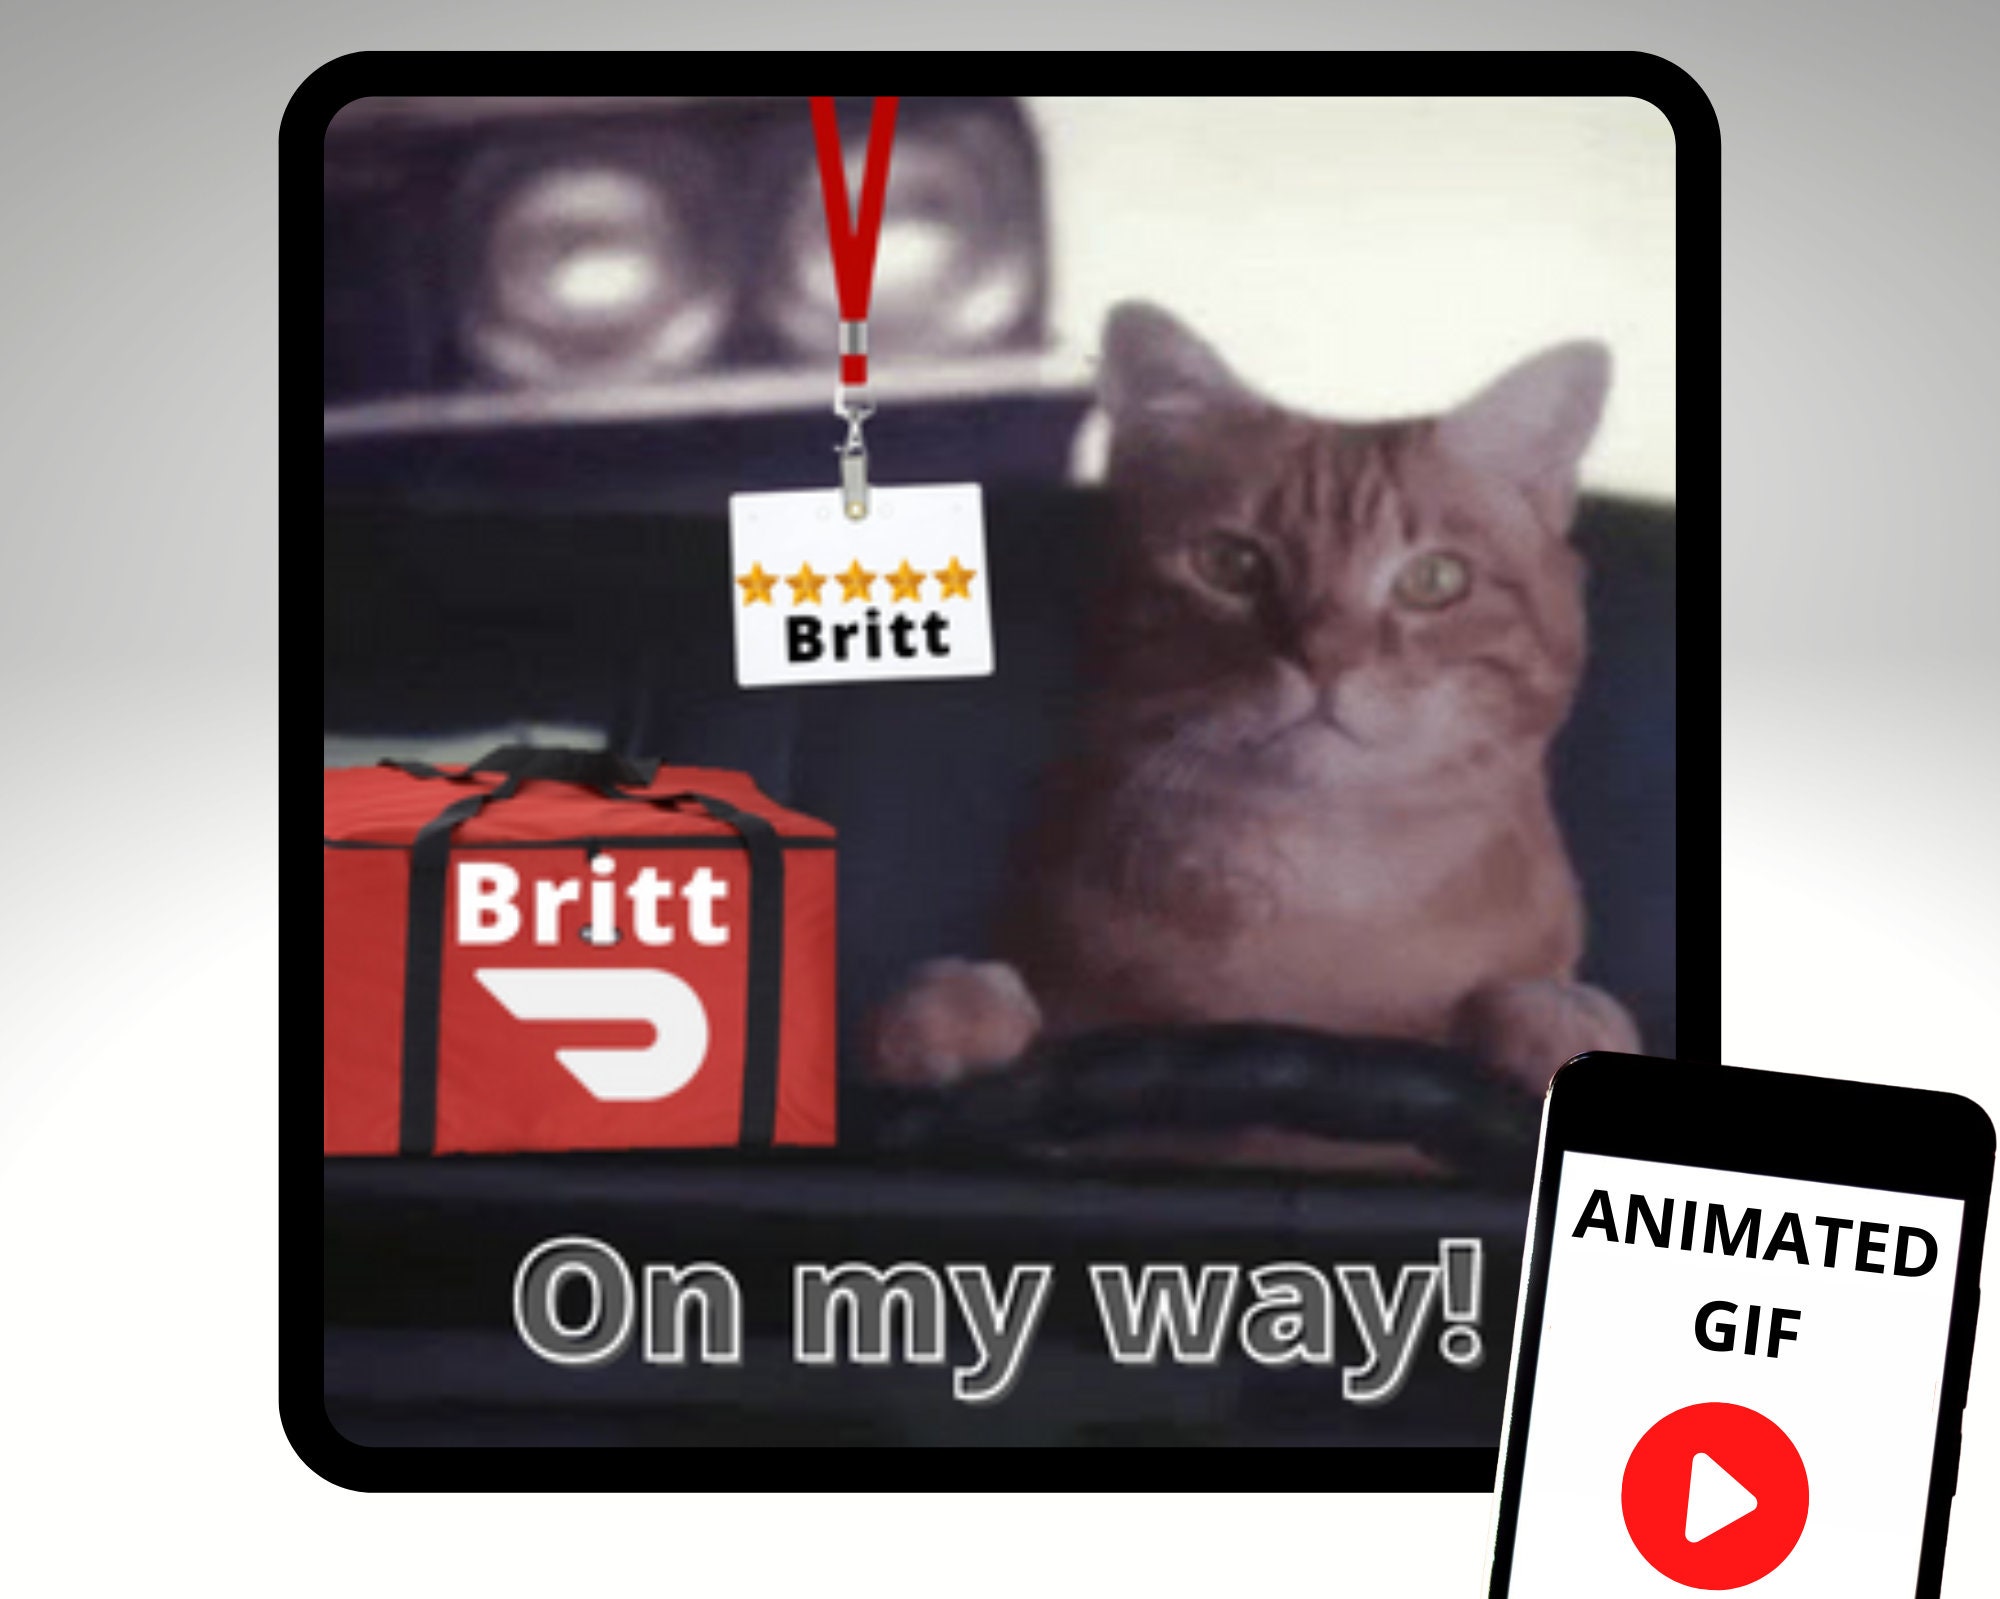 Cute Cat Sneak Peak Sticker for iOS & Android